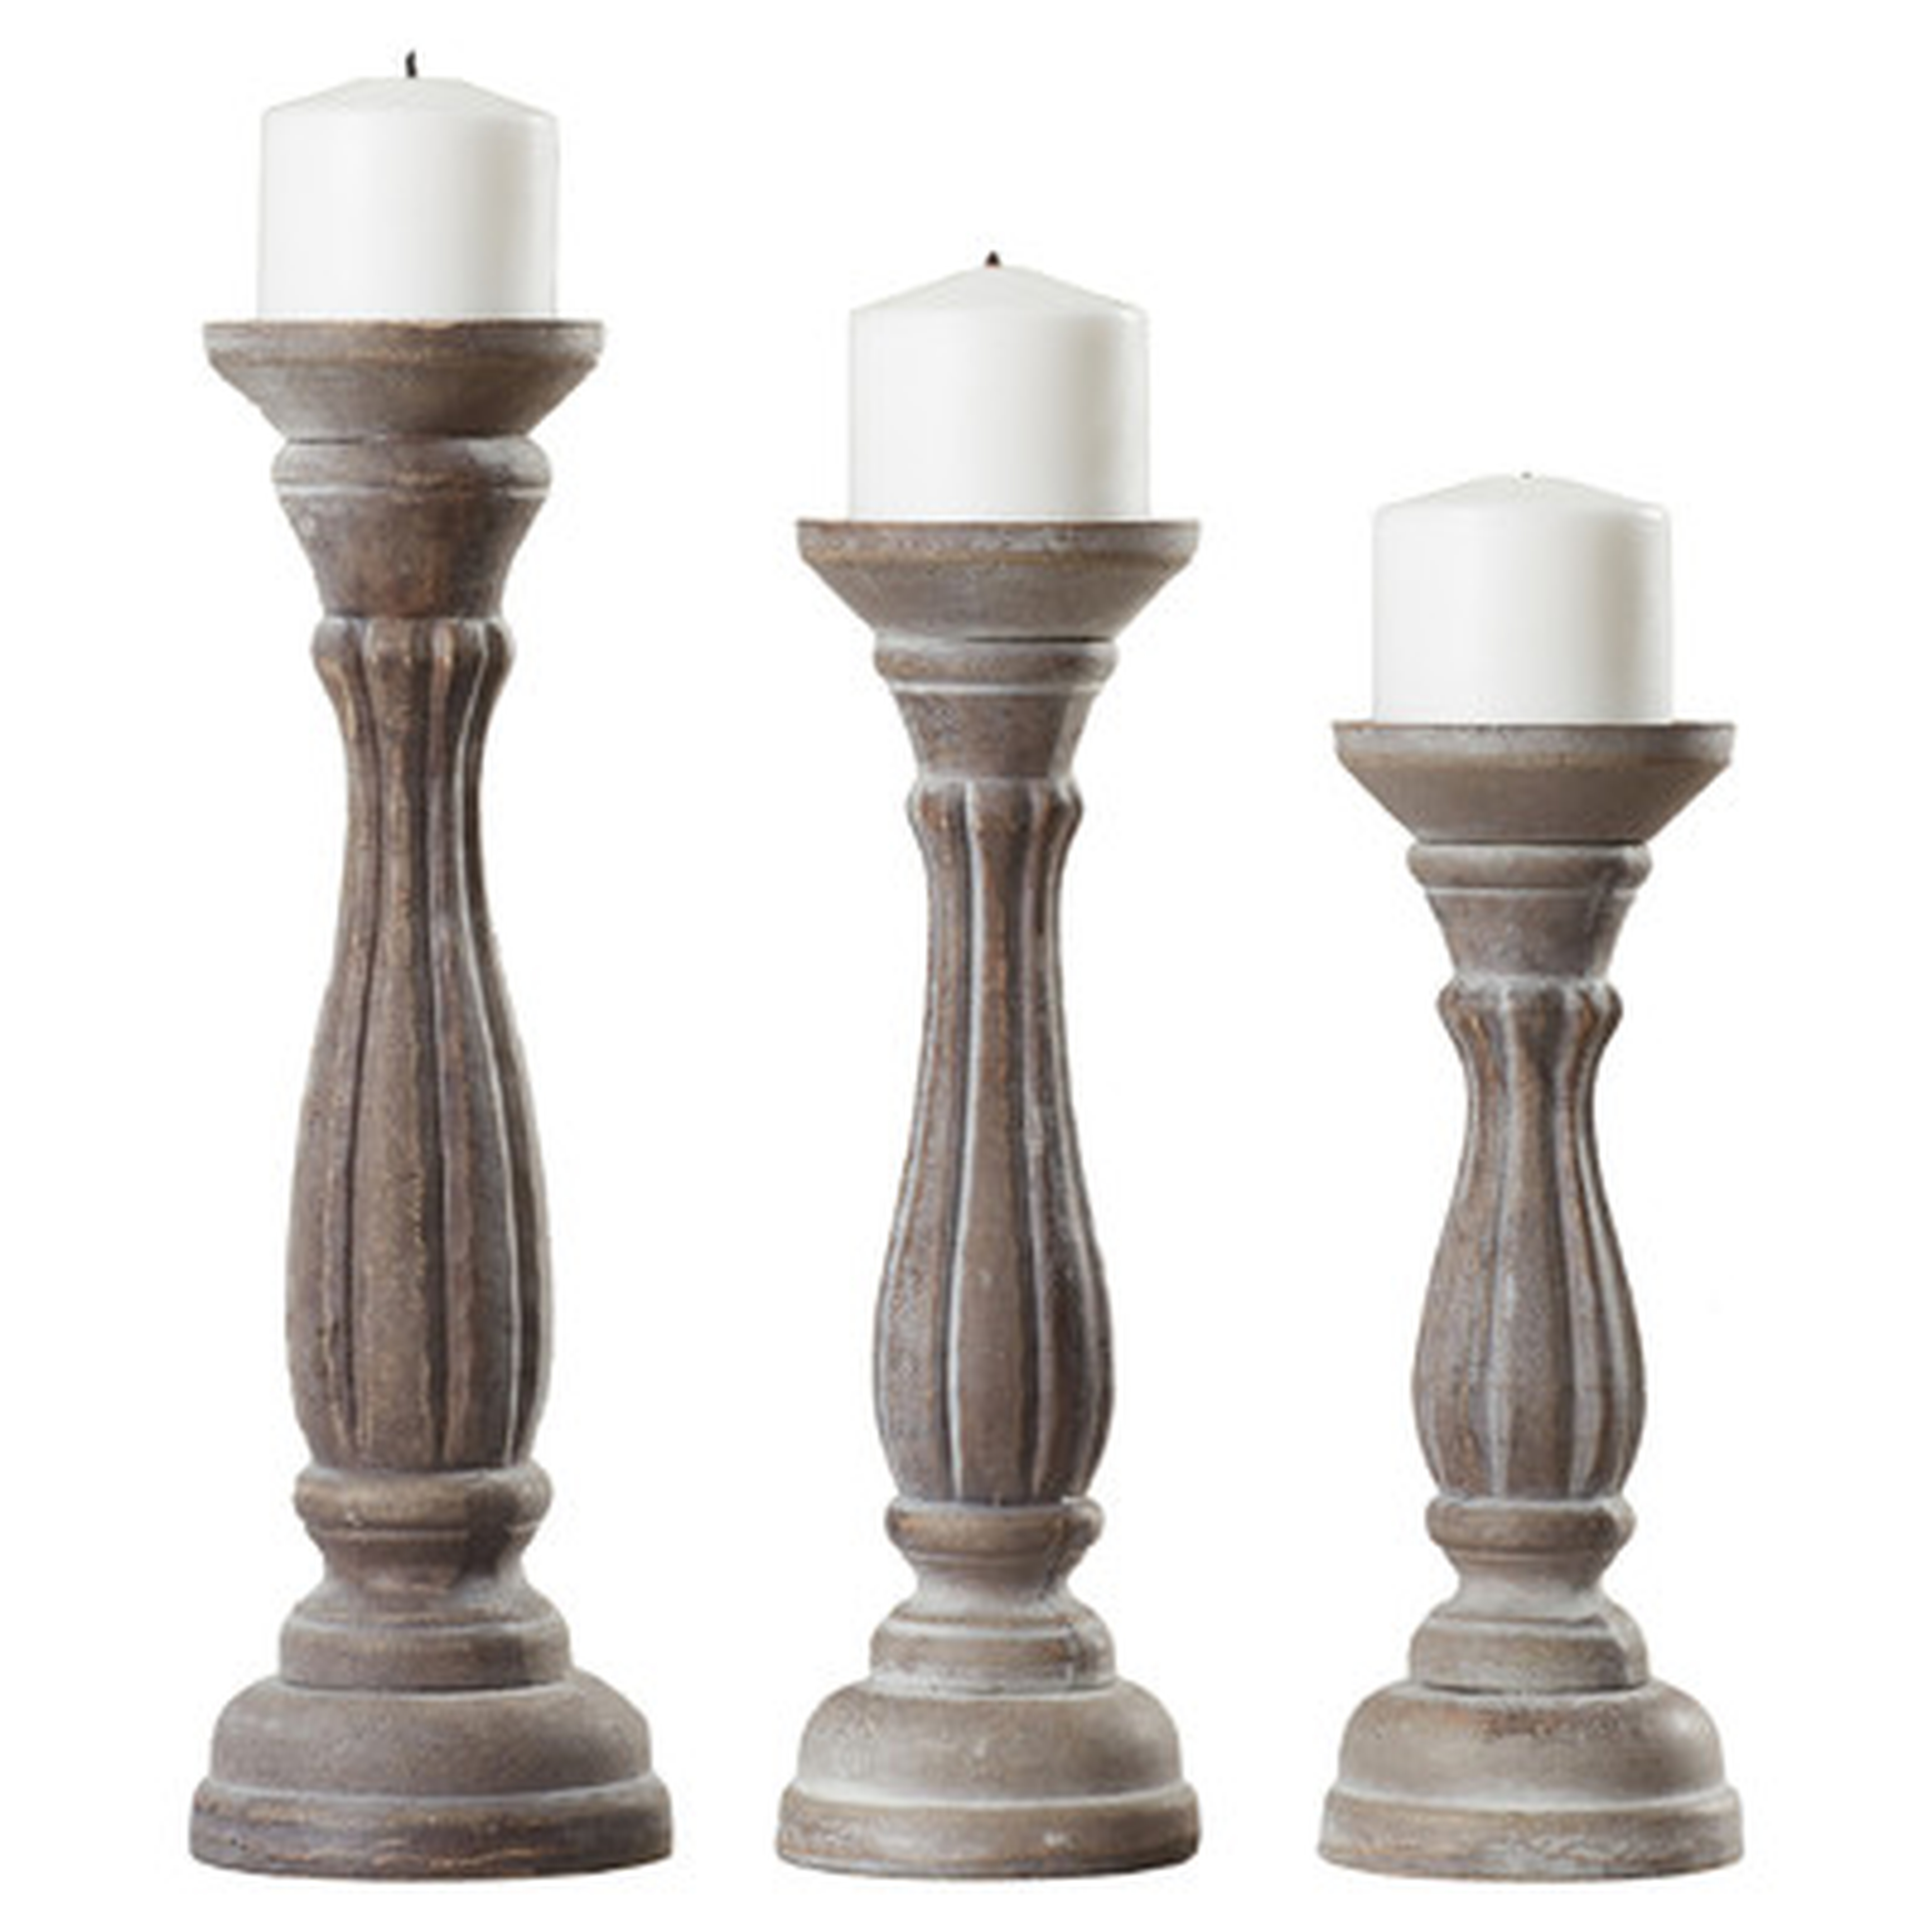 3 Piece Pillar Wood Candlestick Set - Birch Lane